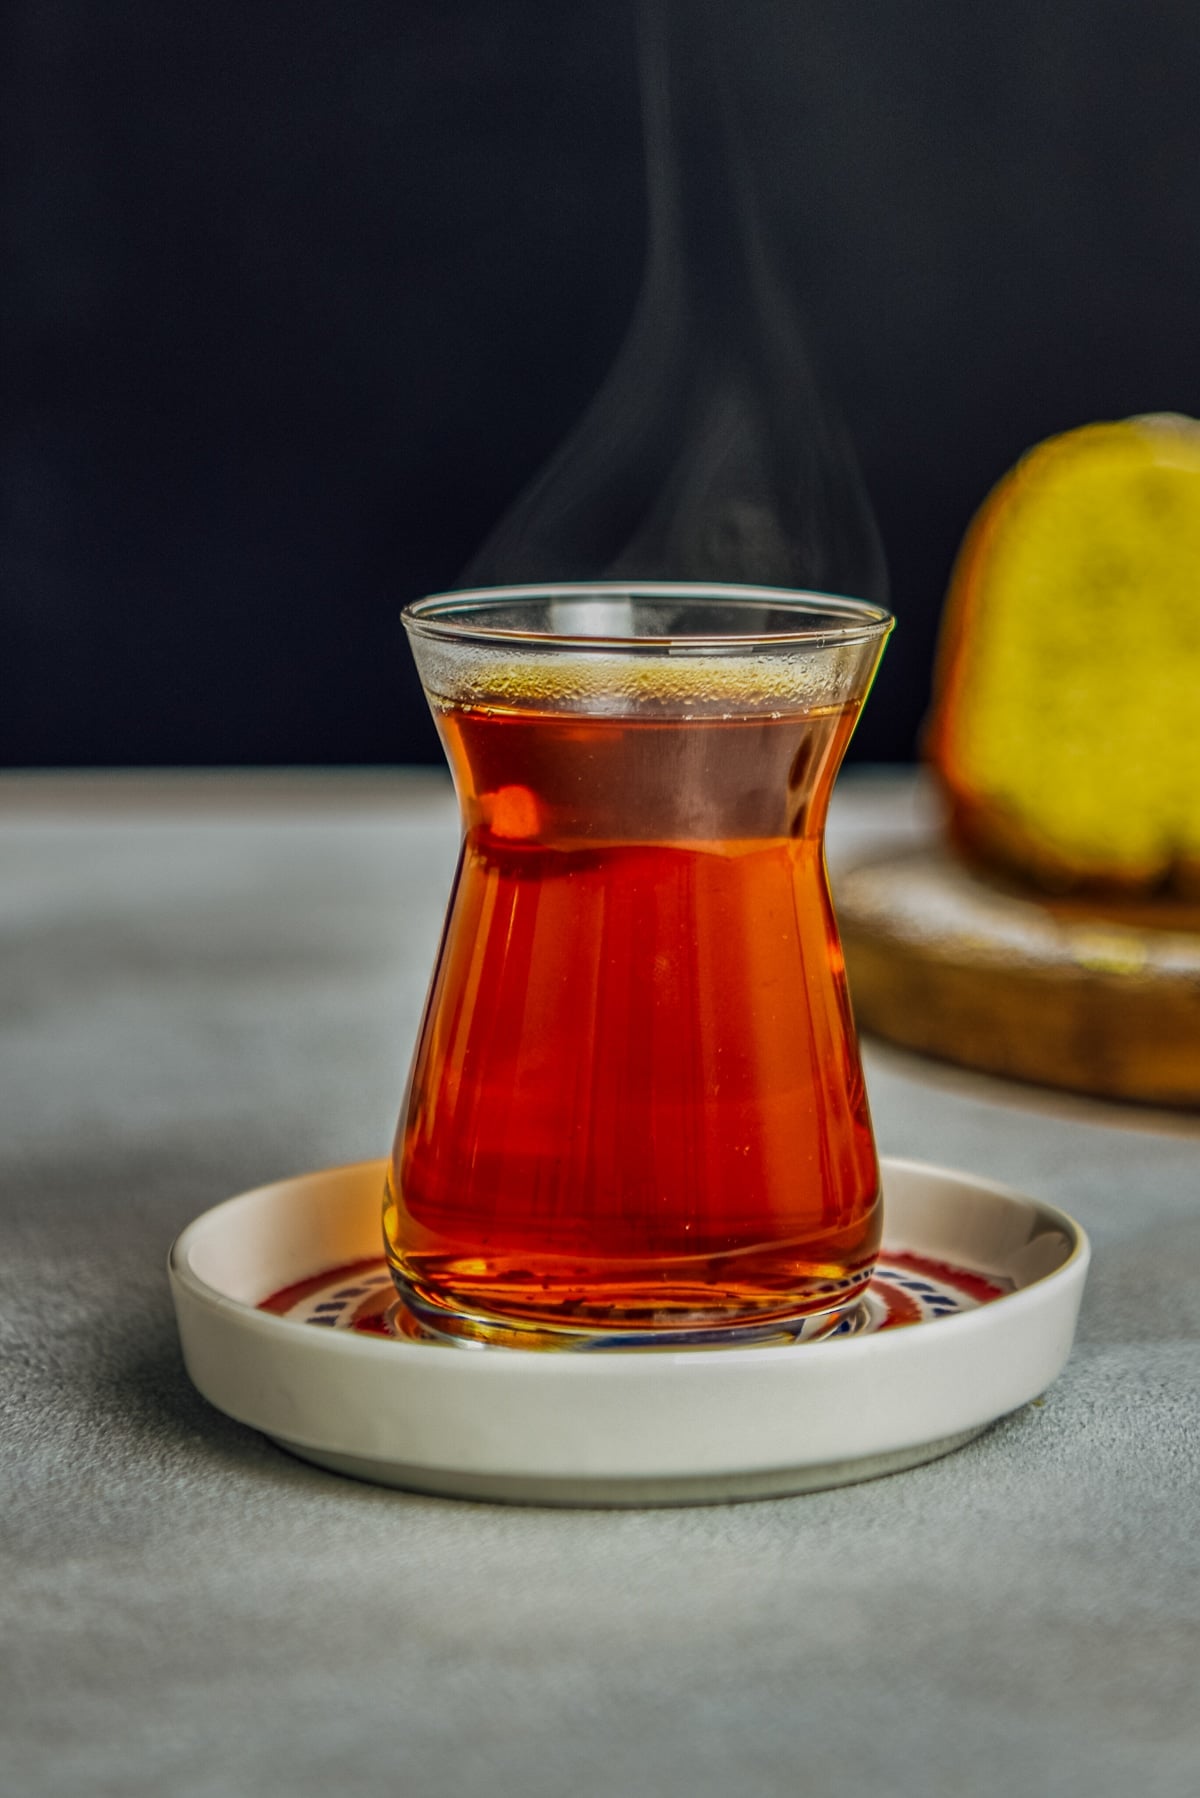 热土耳其茶在其传统的茶杯和茶托。